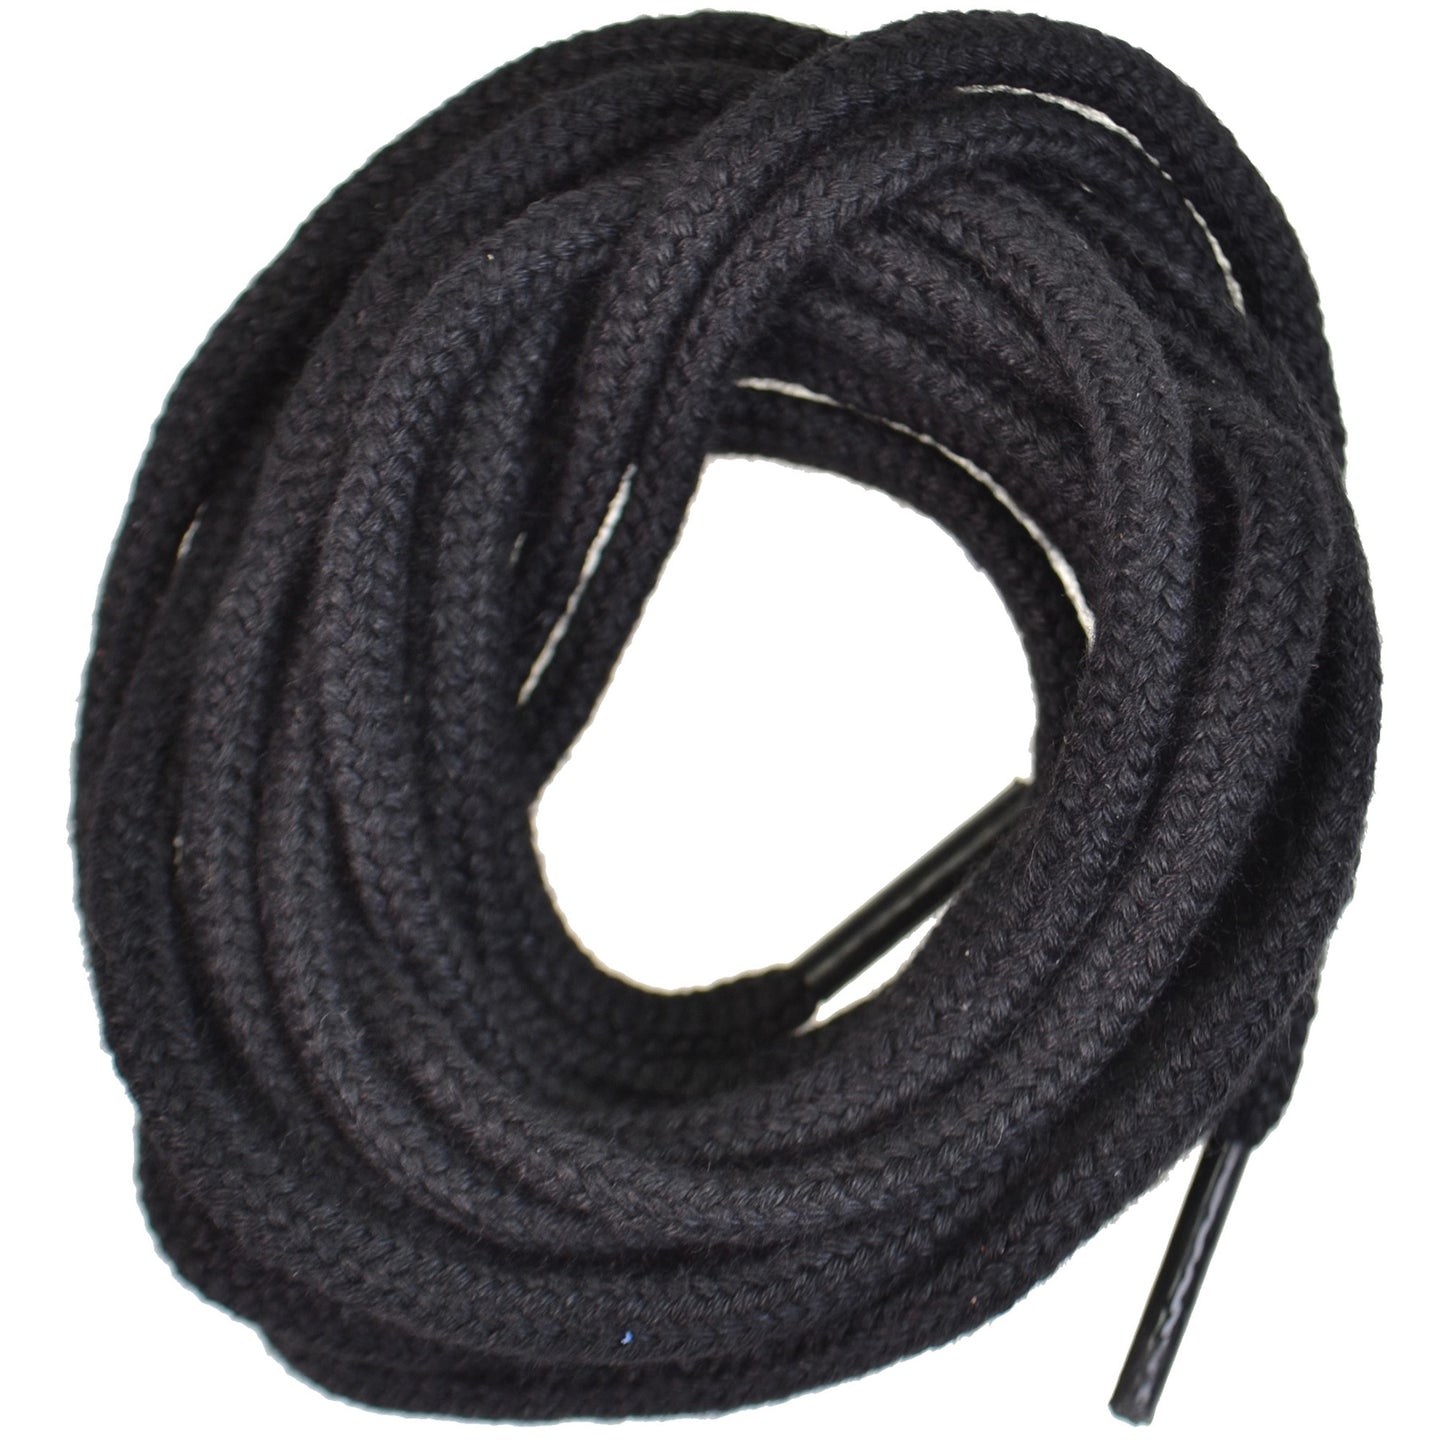 150cm Worksite Flame Retardant Shoe Laces - Black